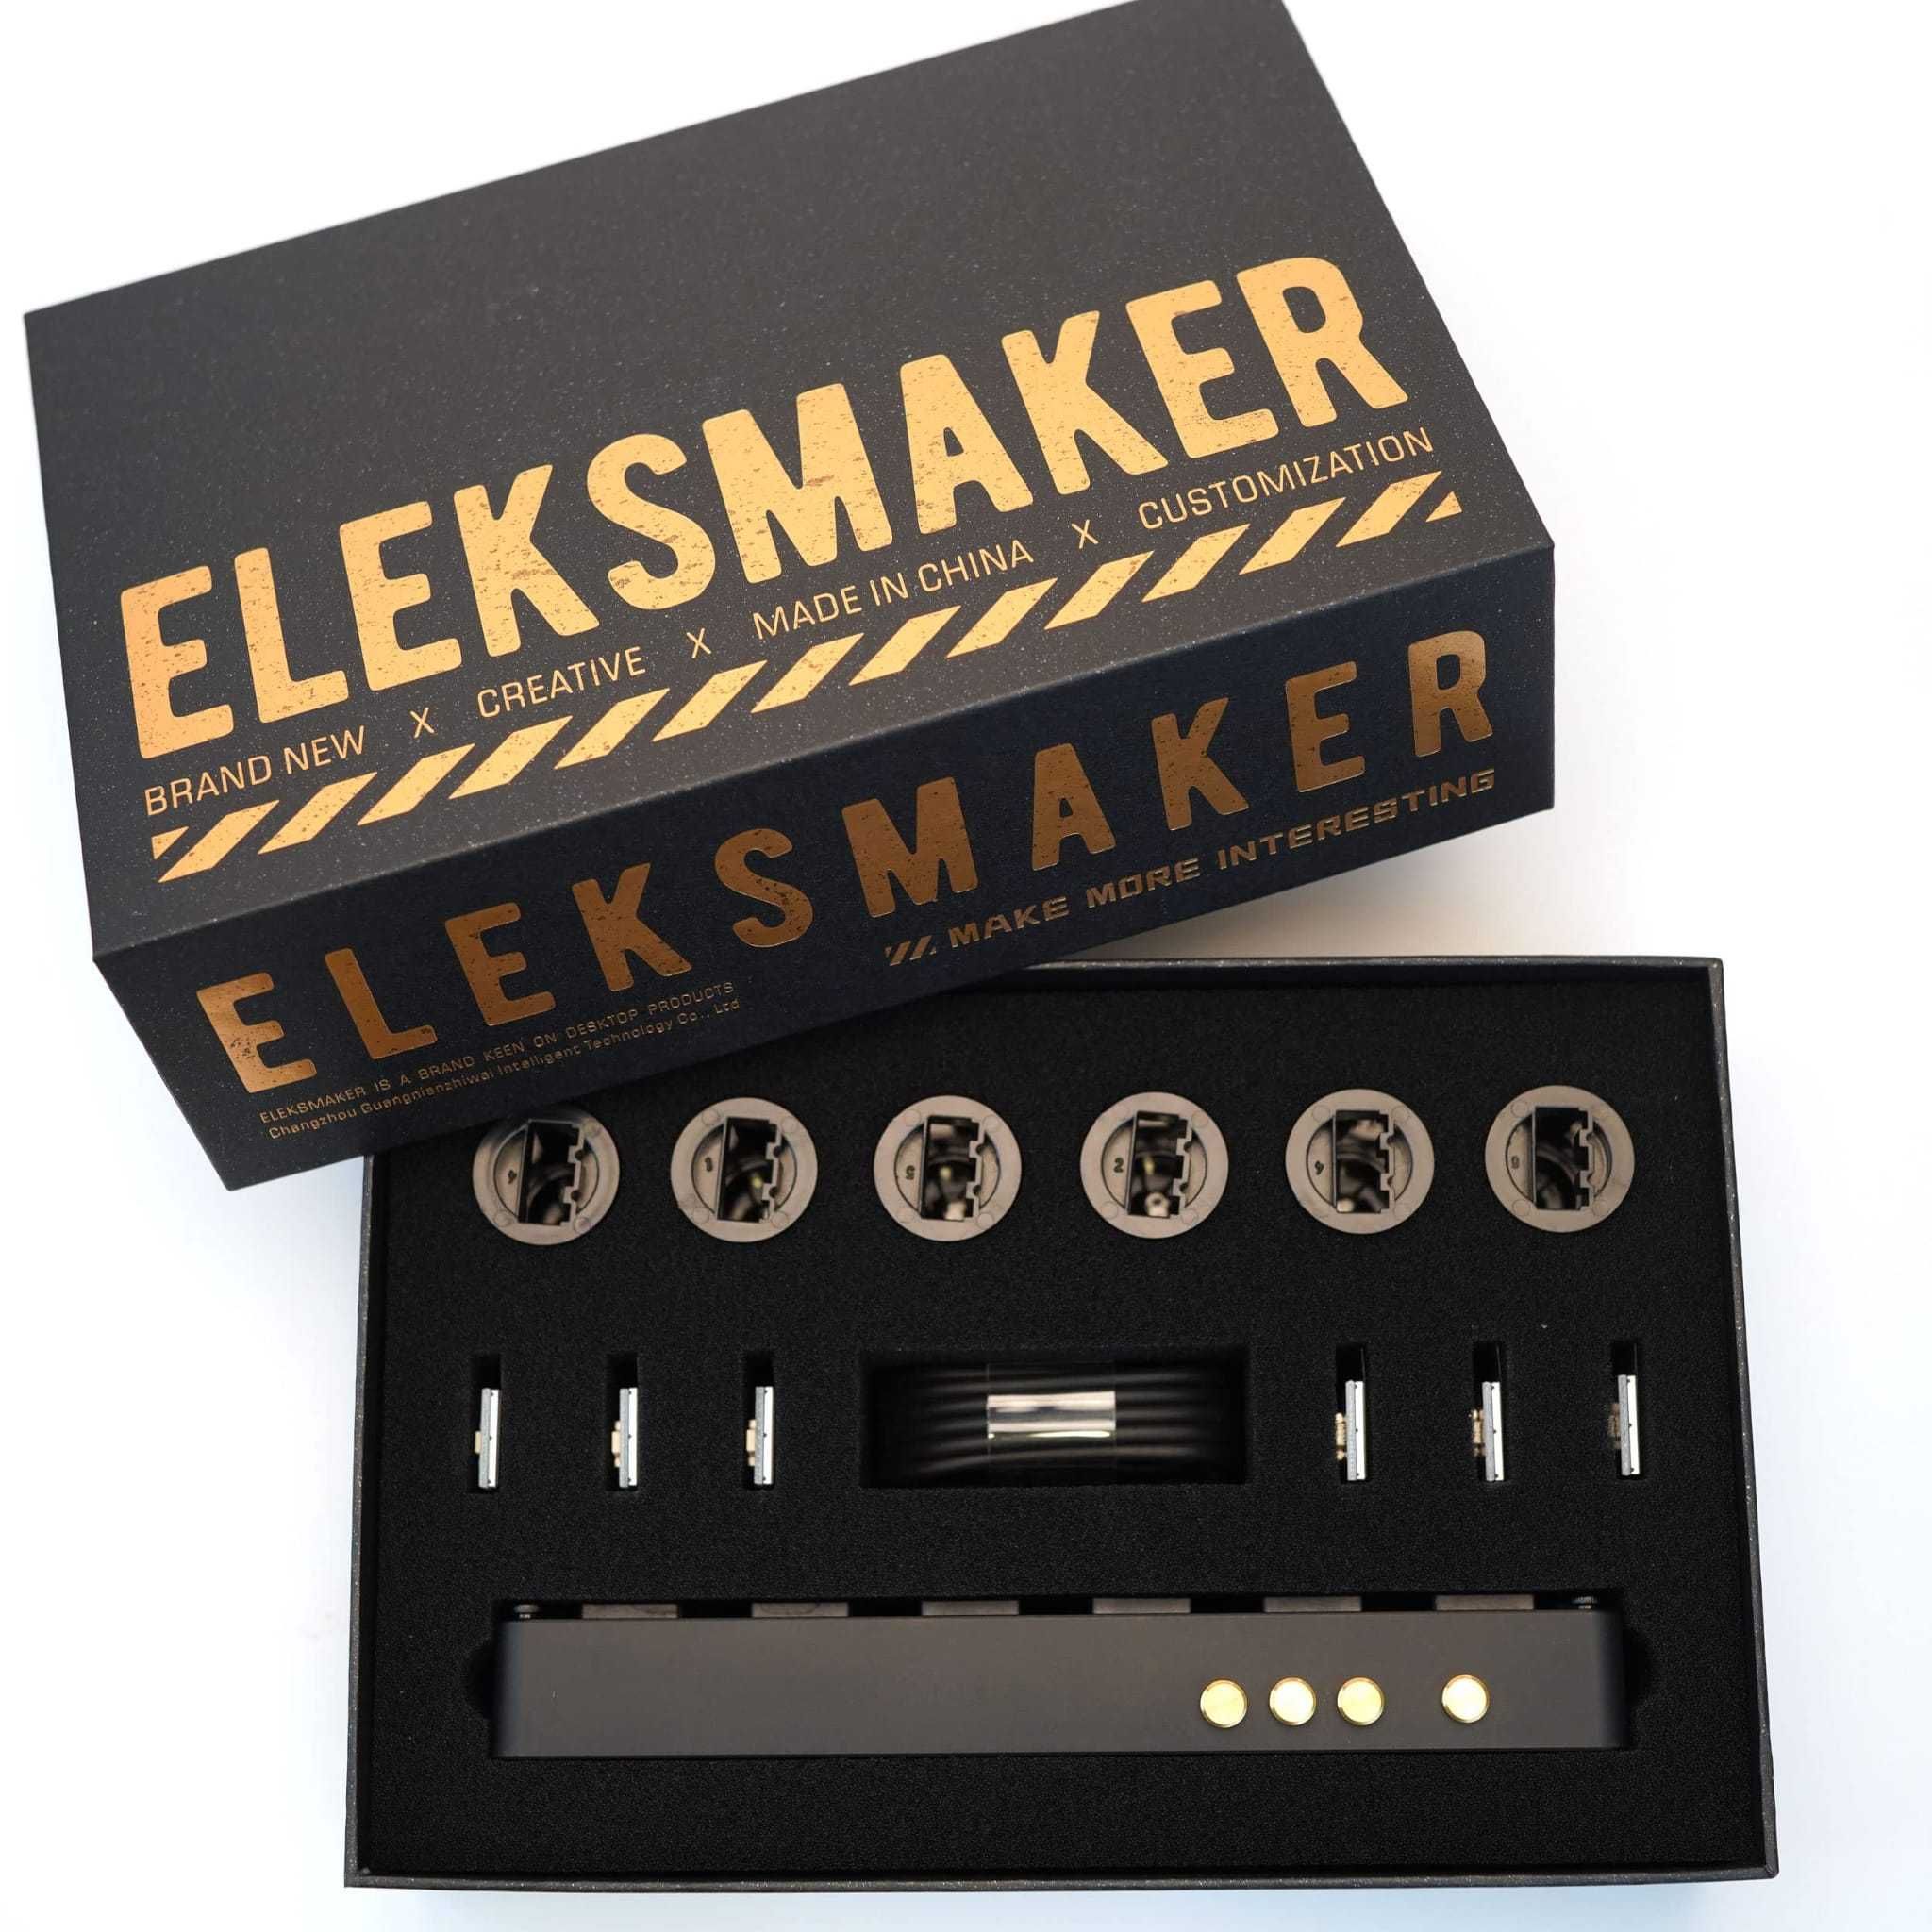 Ceas EleksMaker cu 6 ecrane LCD, display customizabil - cadou elegant